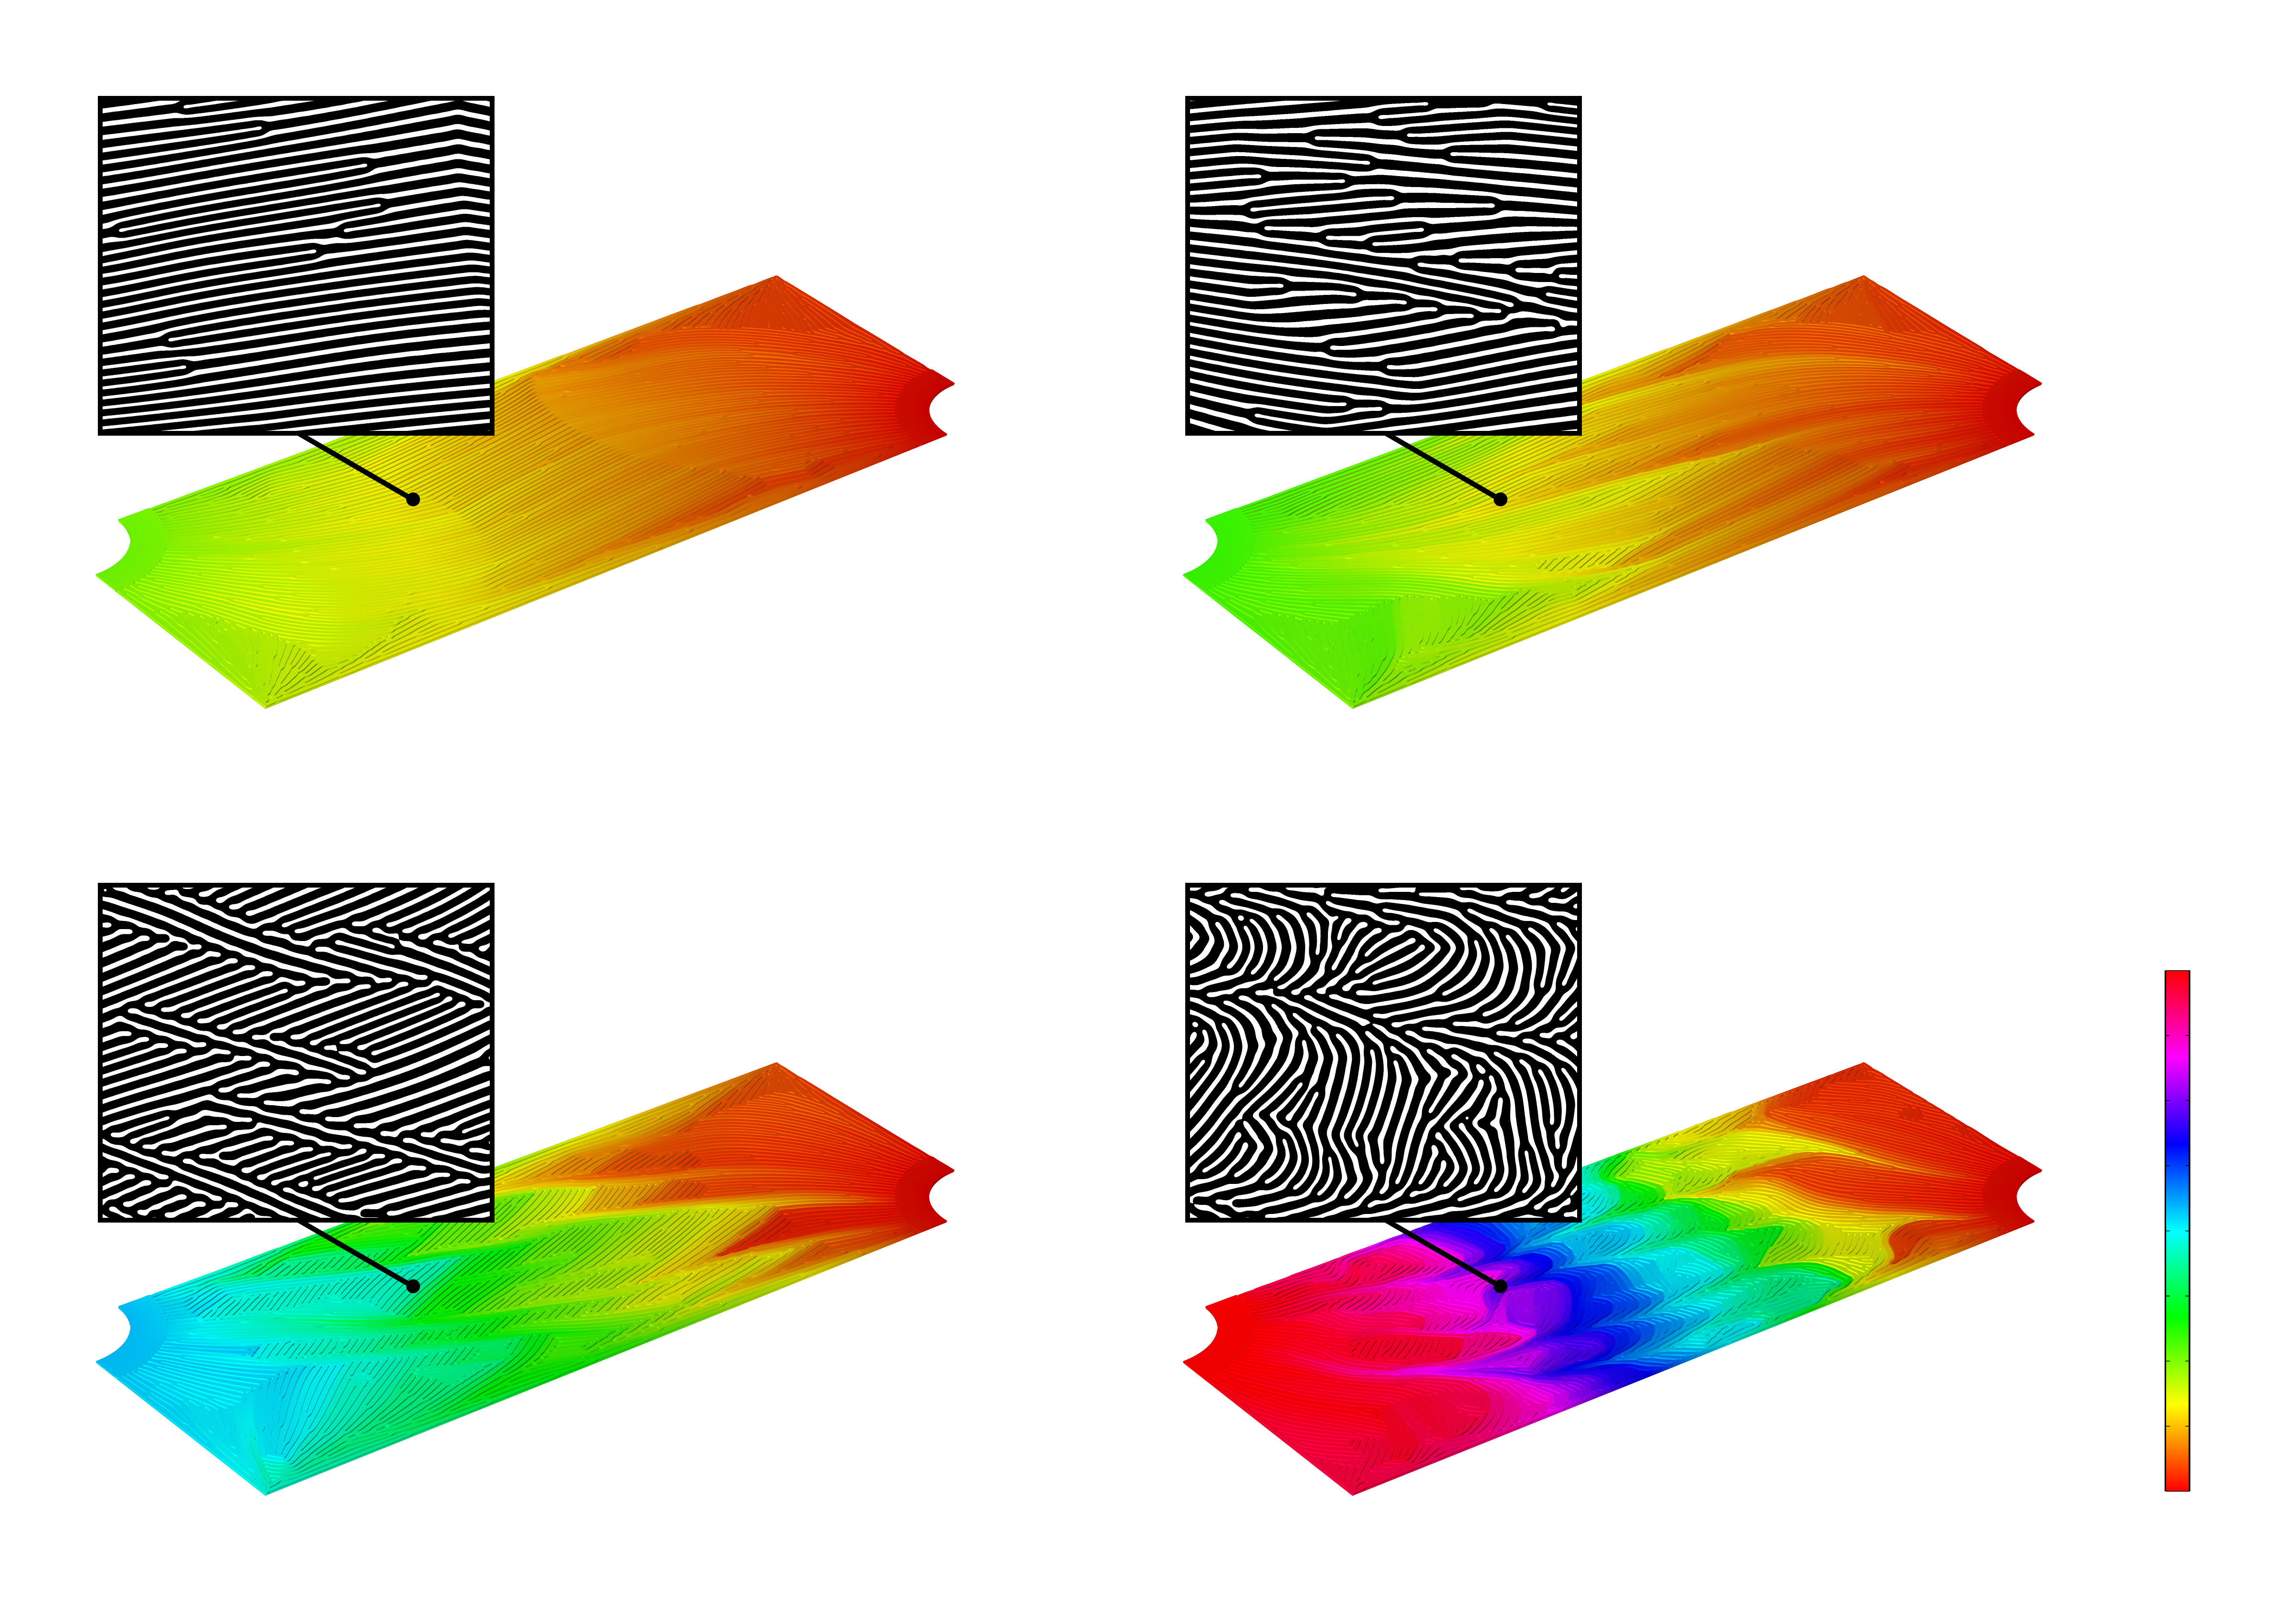  4種類のマイクロチャネル設計の圧力分布を虹色で表示した3Dシミュレーション画像の2×2マトリックスです. 各シミュレーション画像の上に, 各マイクロチャンネルの白黒2D拡大レンダリング画像を表示